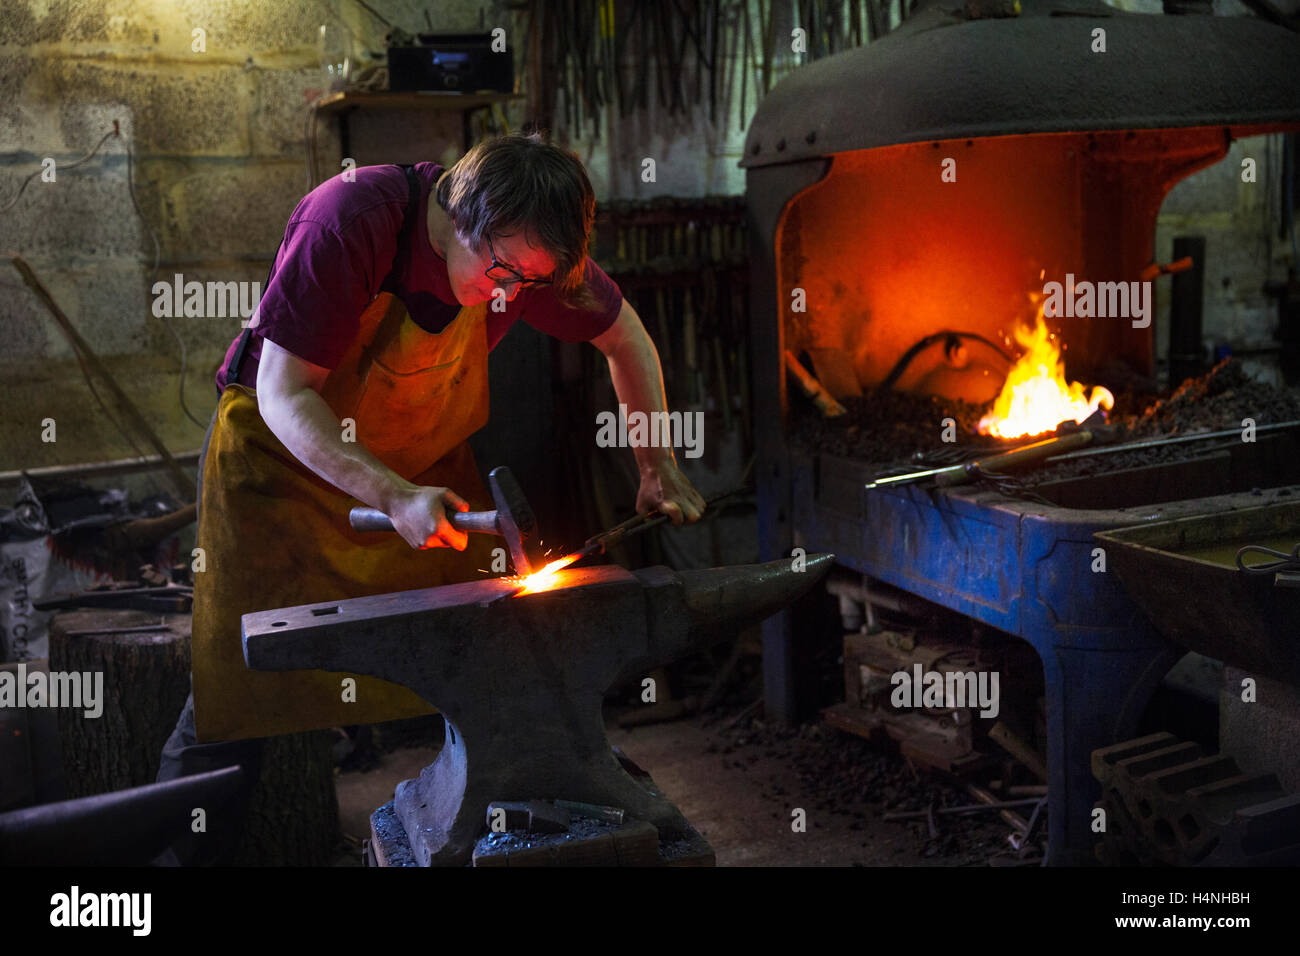 Un forgeron d'un rouge pourpre le métal chaud sur enclume à l'intérieur d'un atelier. Banque D'Images